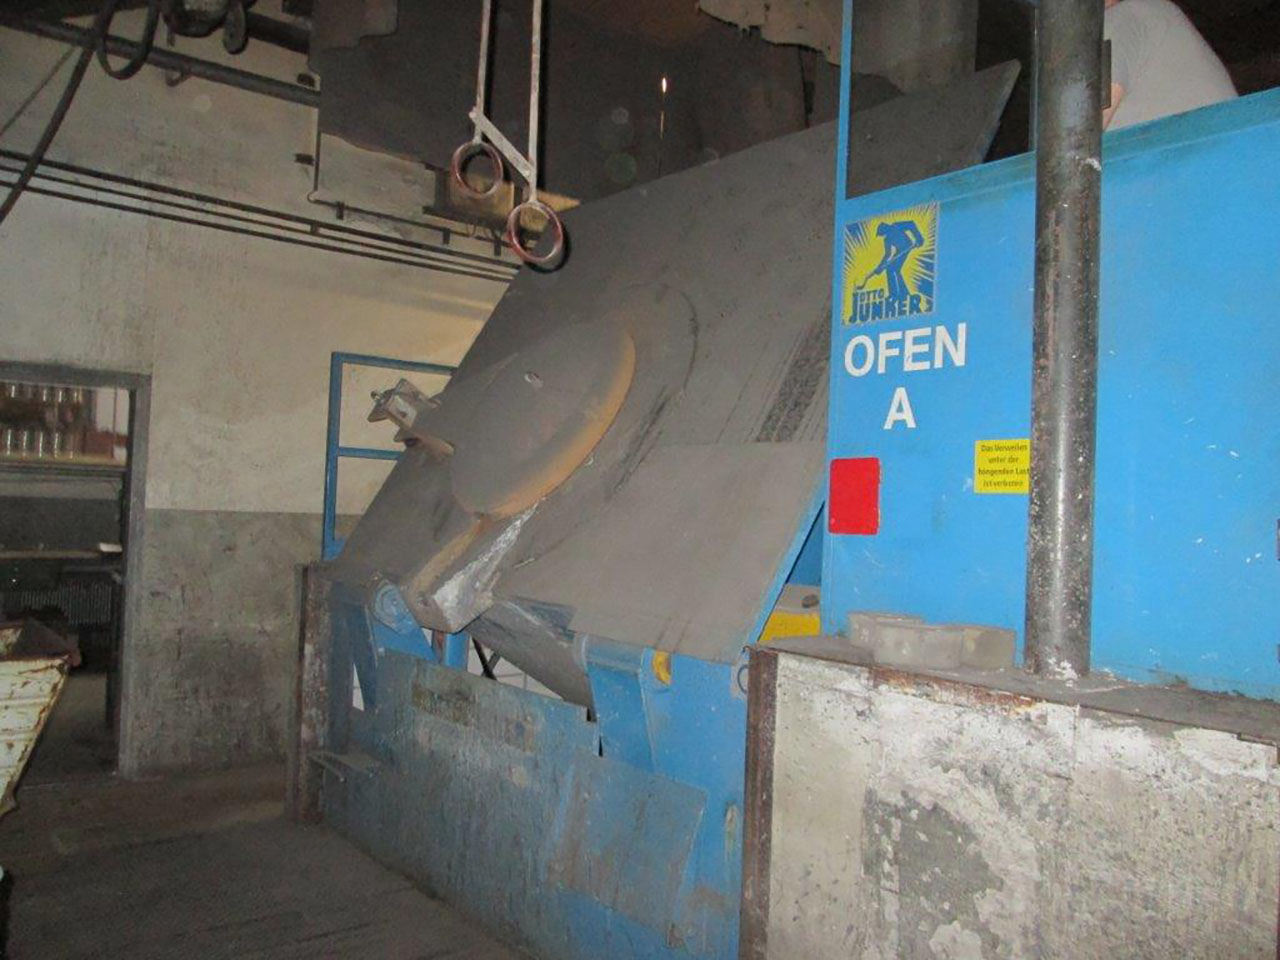 OTTO JUNKER MFT Ge 1500 melting furnace O1649, used